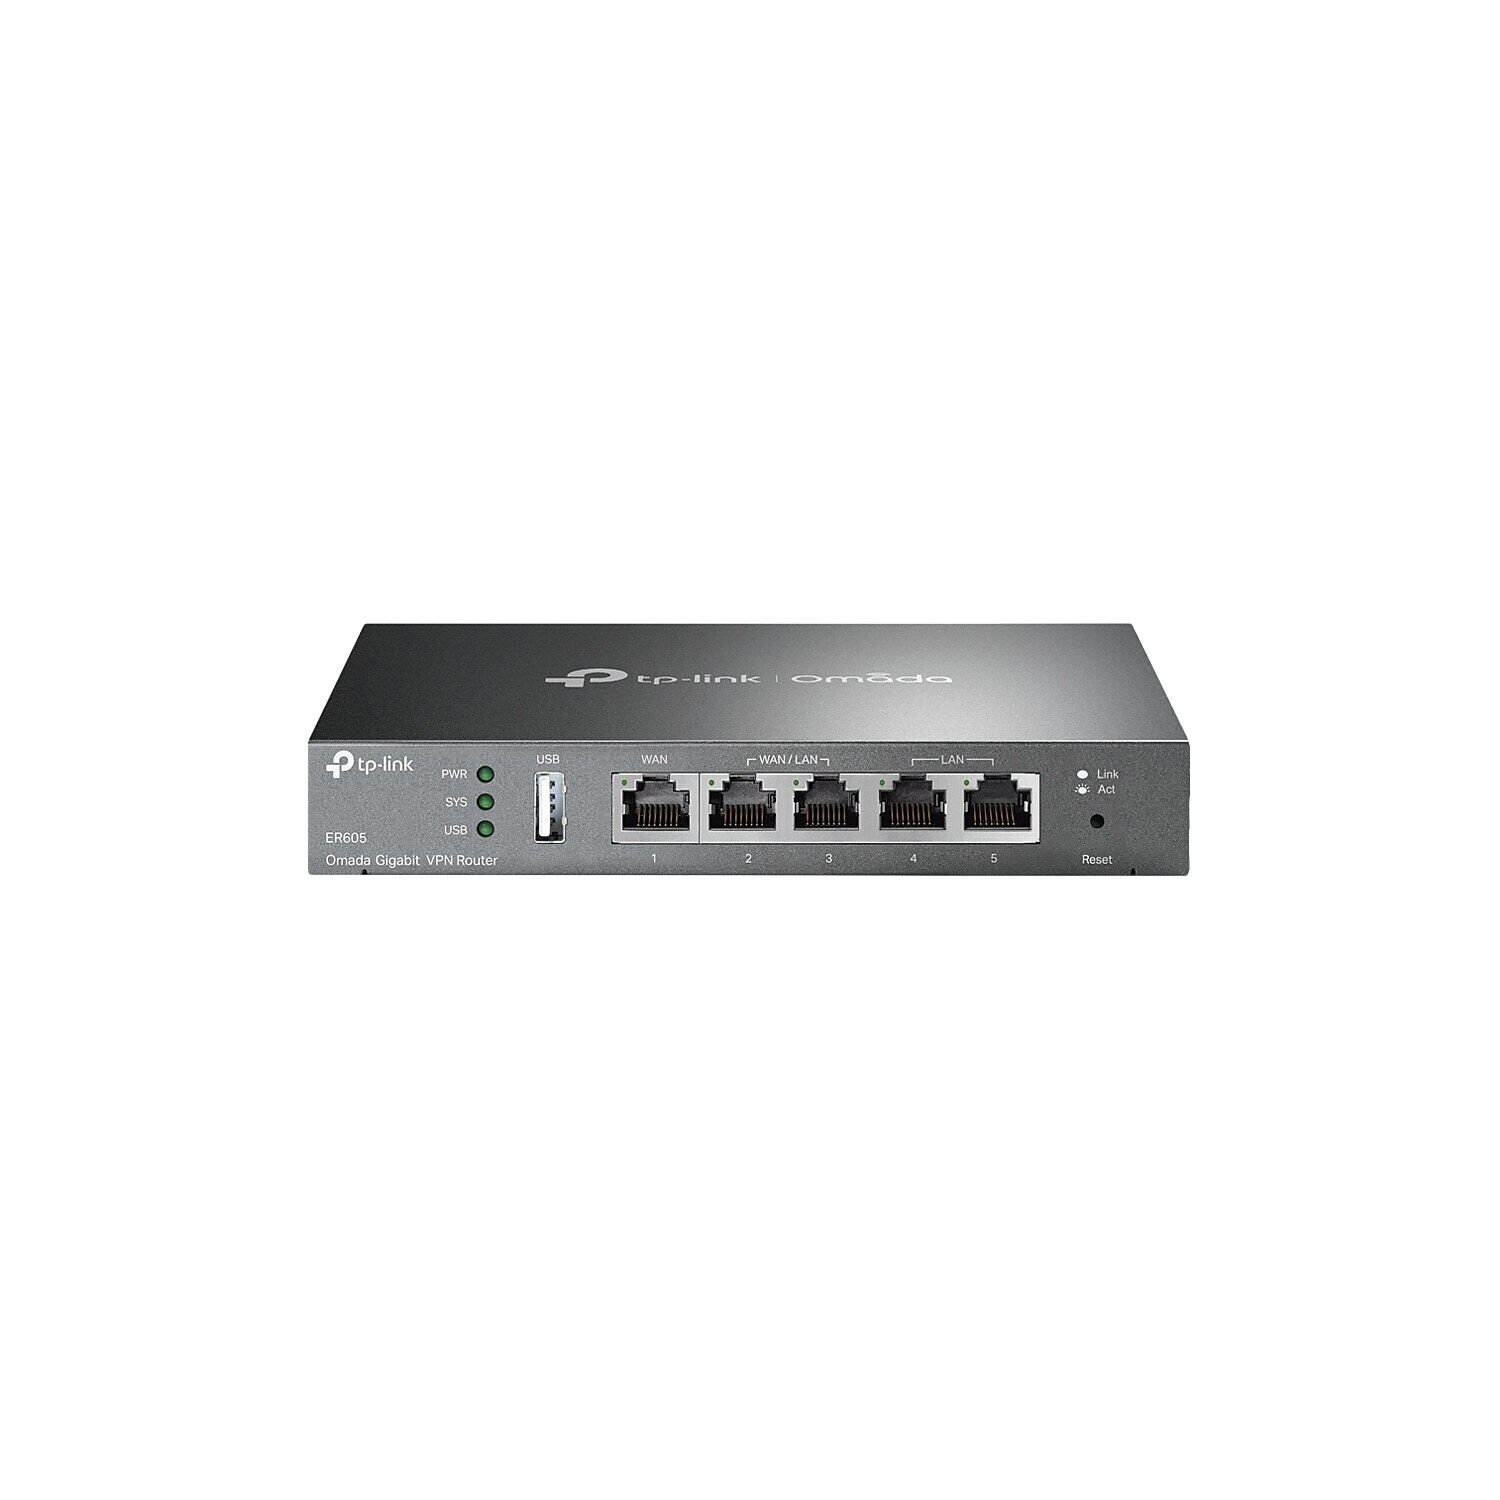 TP-LINK SafeStream 945.56Mbps Router Black (ER605)